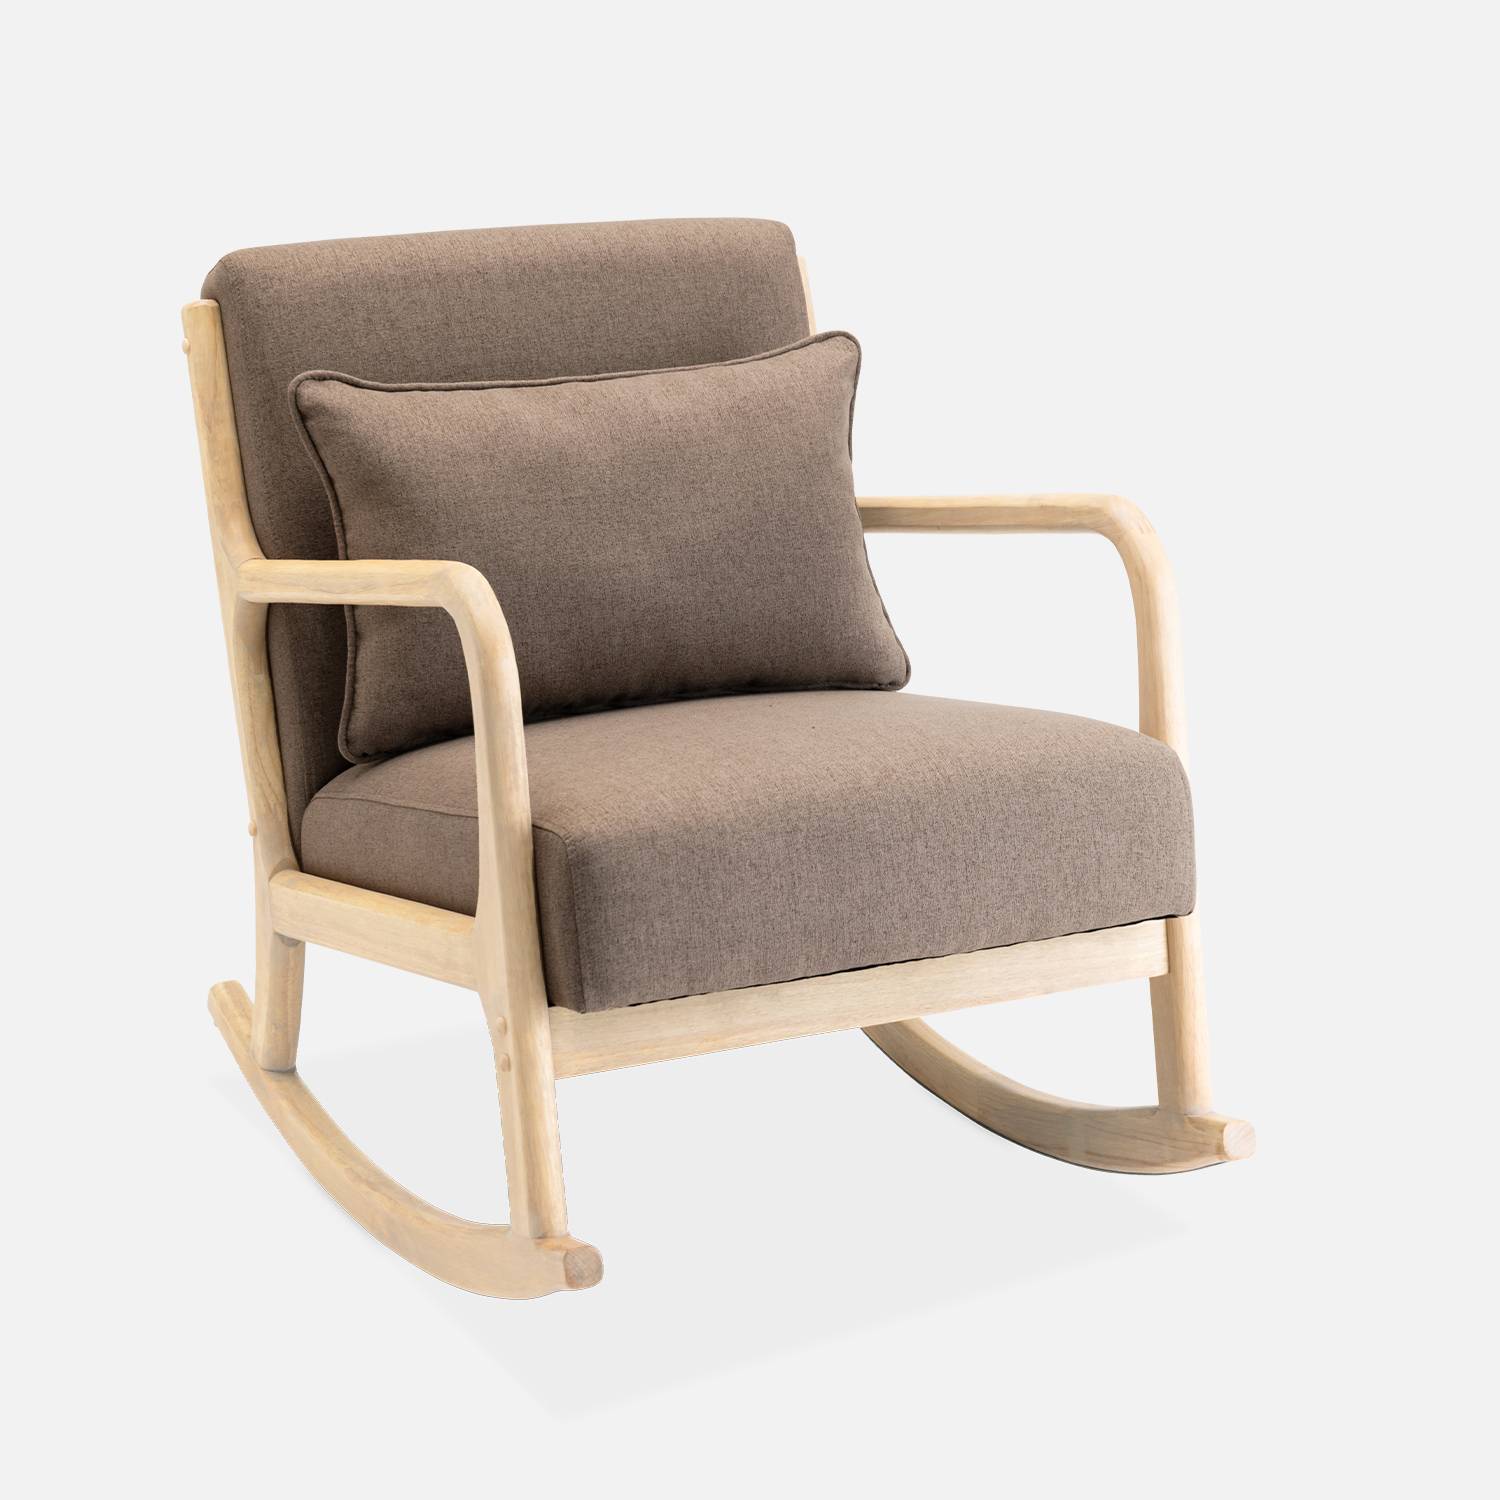 Sedia a dondolo marrone di design in legno e tessuto, 1 posto, sedia a dondolo scandinava Photo3